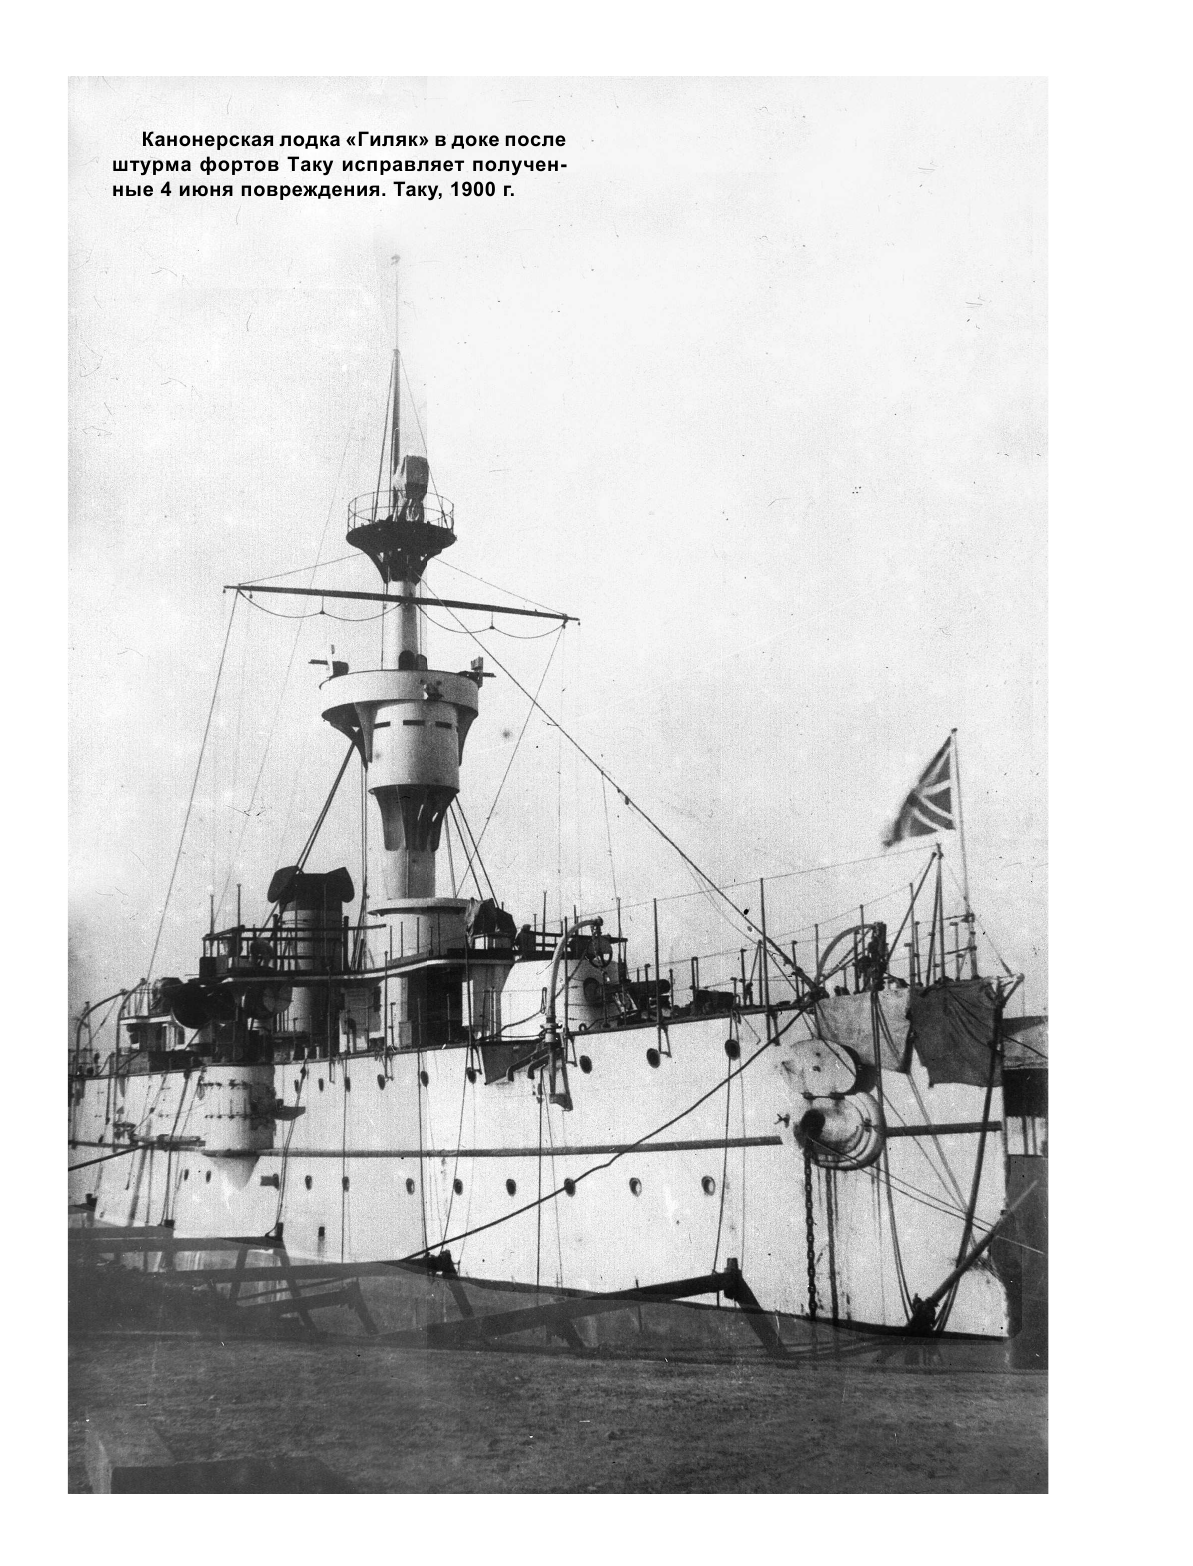 Канонерские лодки типа «Гиляк». От Китая и Порт-Артура до Первой мировой - фото №5